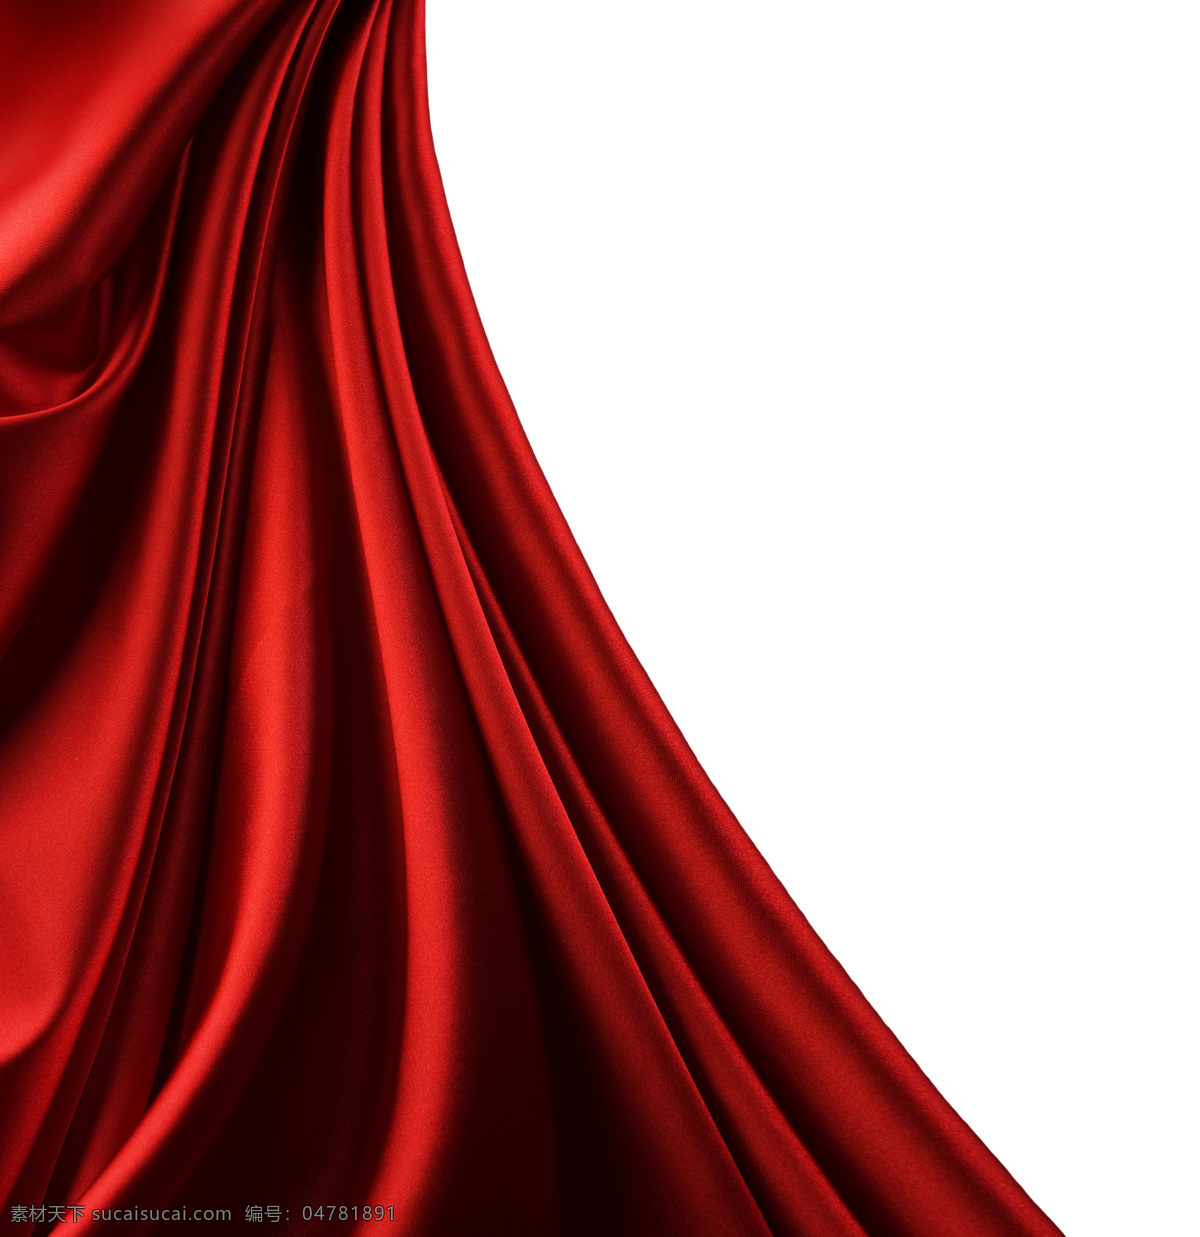 红色幕帘 红色 幕帘 绸布 丝绸 背景底纹 底纹边框